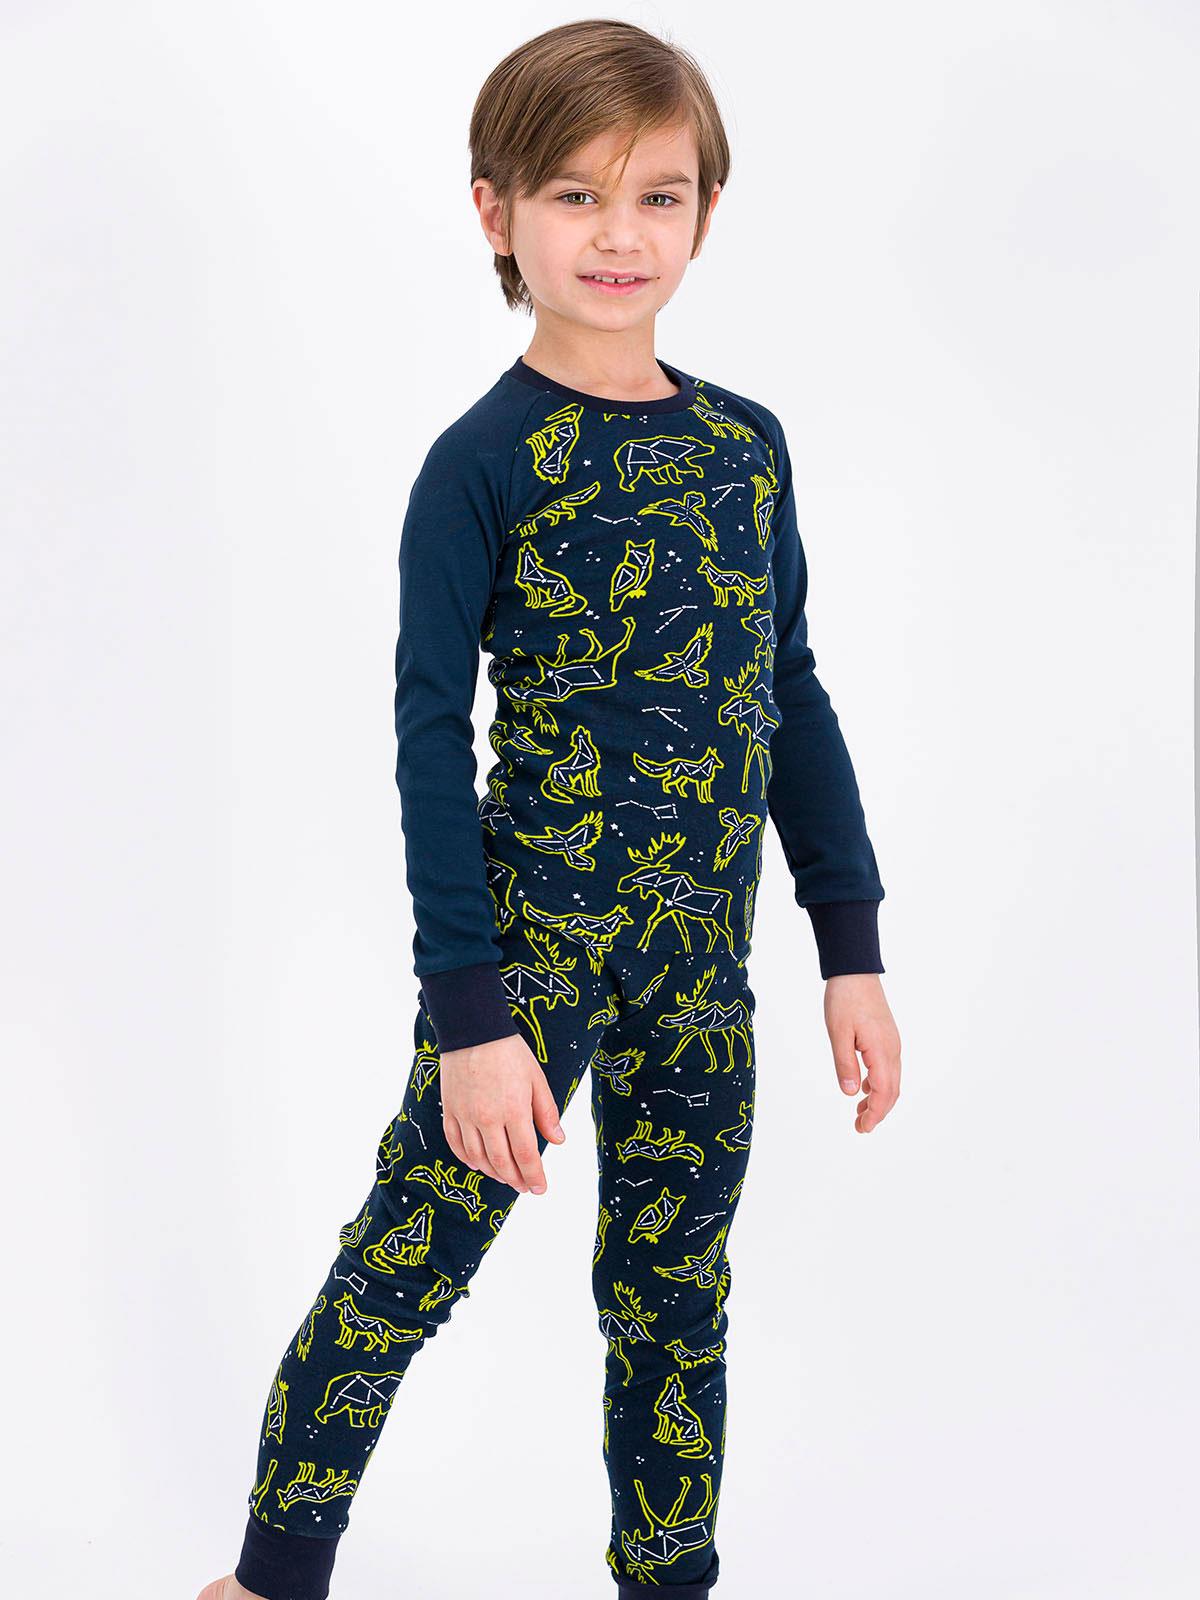 Roly Poly Erkek Çocuk Pijama Takımı 2-7 Yaş Lacivert